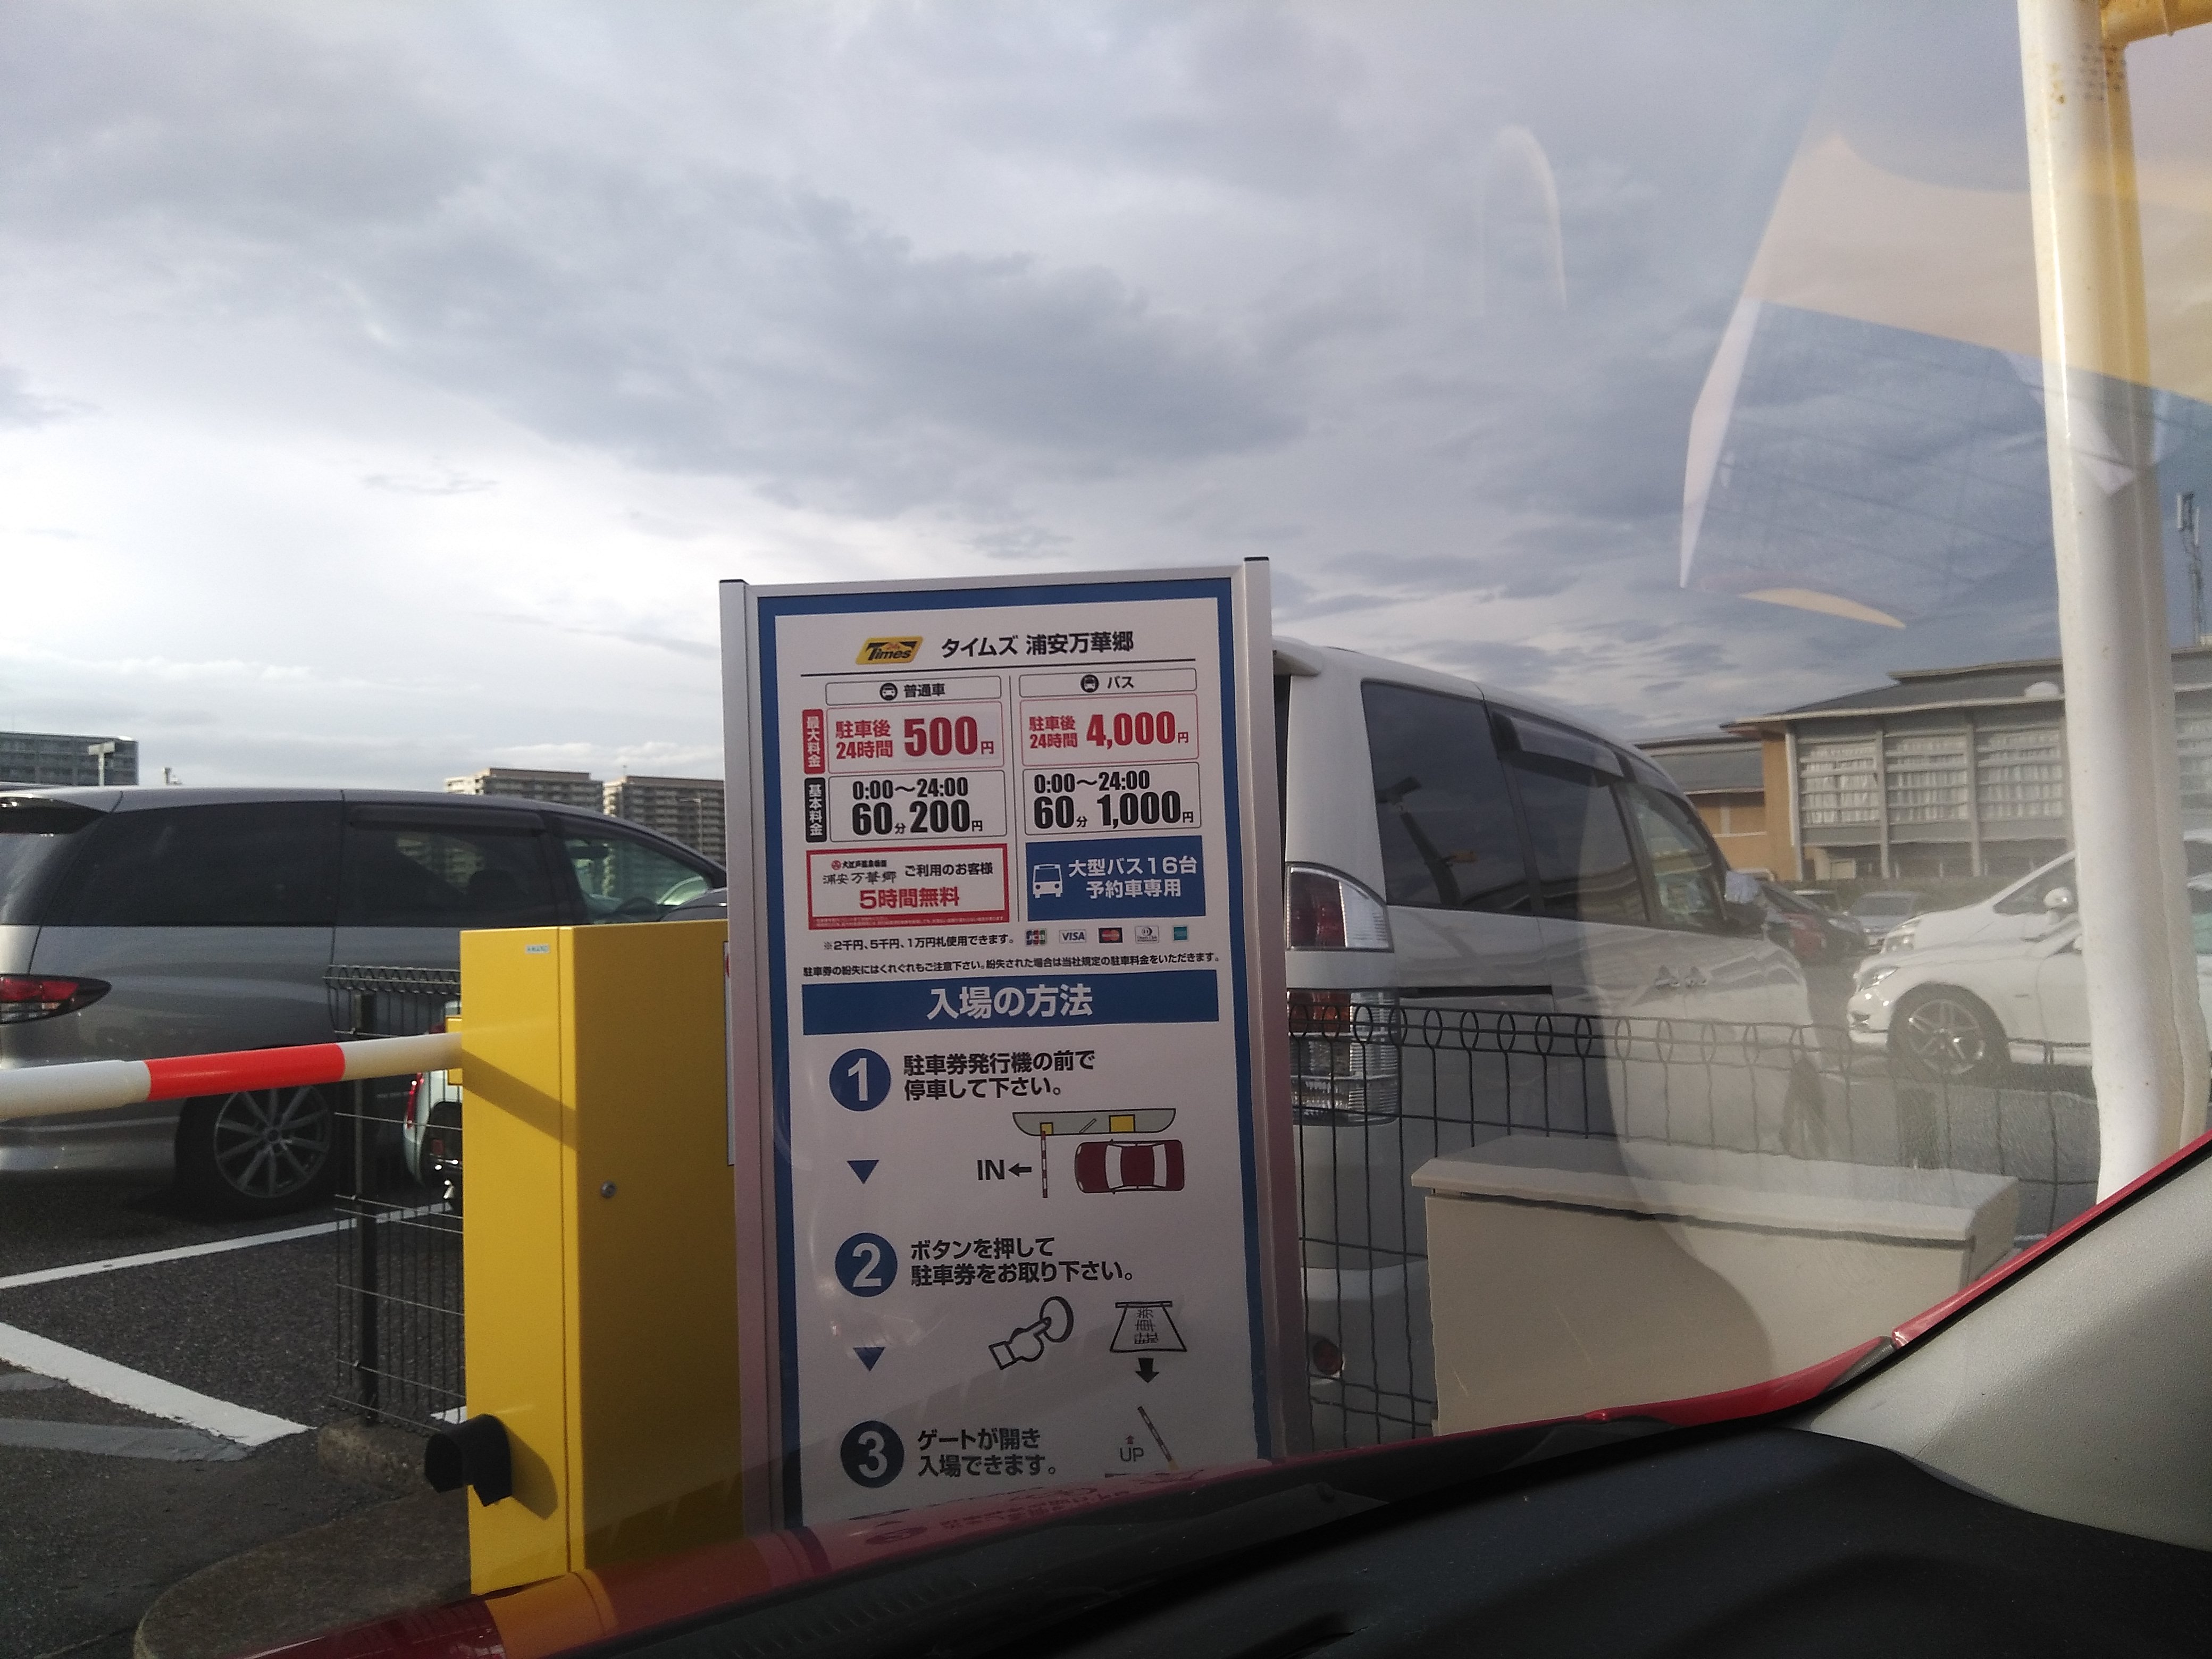 大江戸温泉 浦安万華鏡 の駐車場料金を無料にする方法 完全無料でクーポンが手に入る